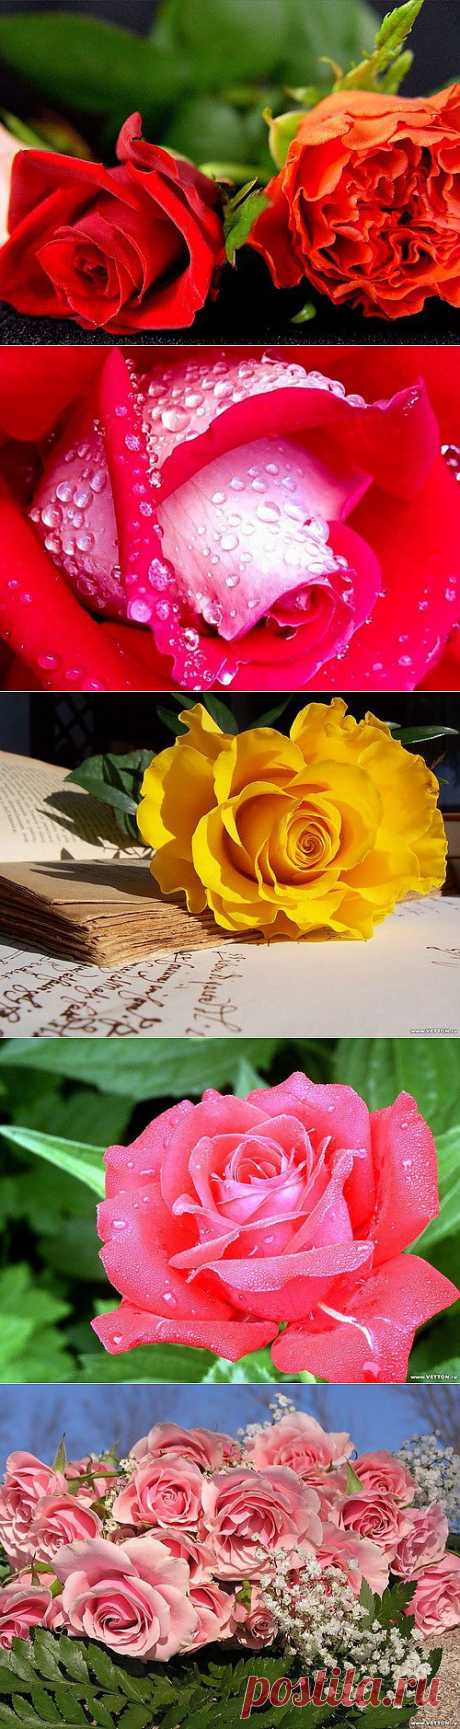 Природа, Розы, roses 19, цветы, розы, фото роз, красивые розы, фотографии цветов, basik.ru